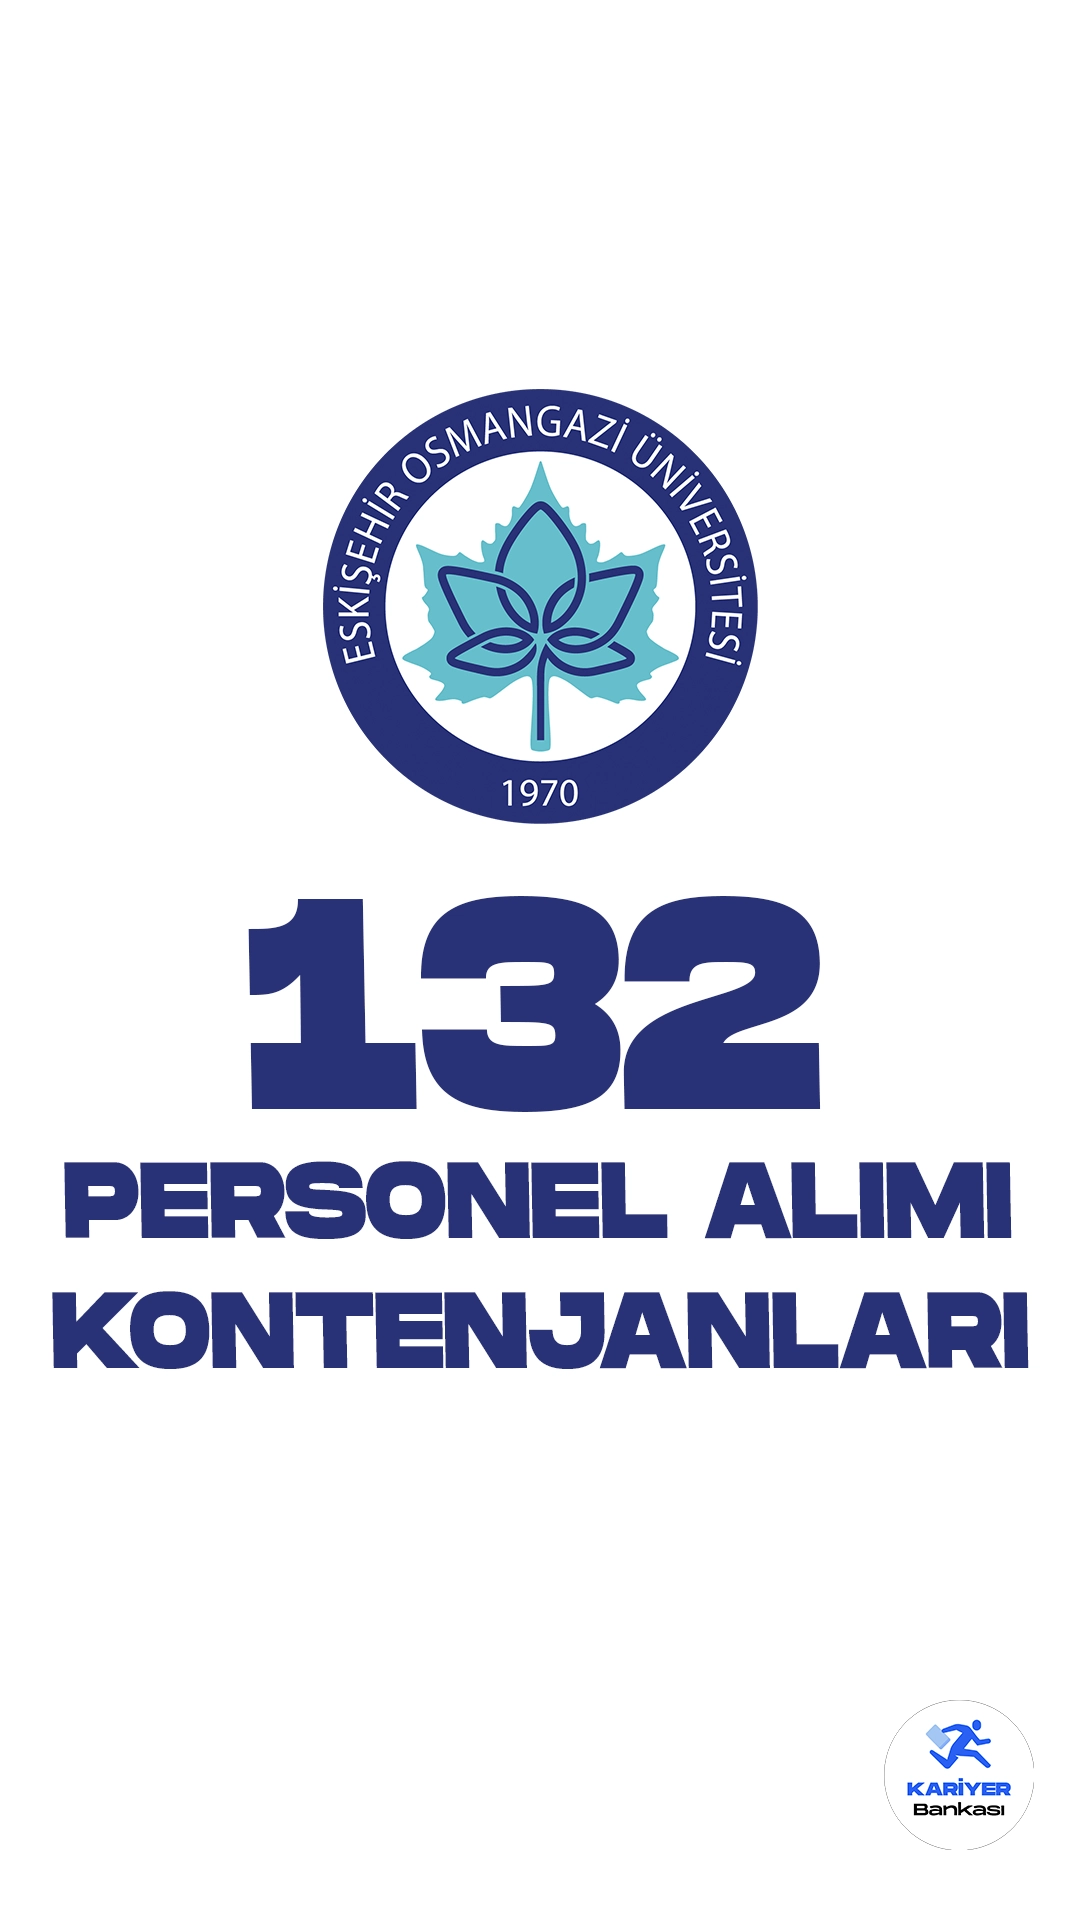 Eskişehir Osmangazi Üniversitesi (OGÜ) personel alımı başvuruları sürüyor. Kontenjan dağılımı, şartlar ve başvuru sayfasına dair detaylar bu haberimizde yer alıyor.